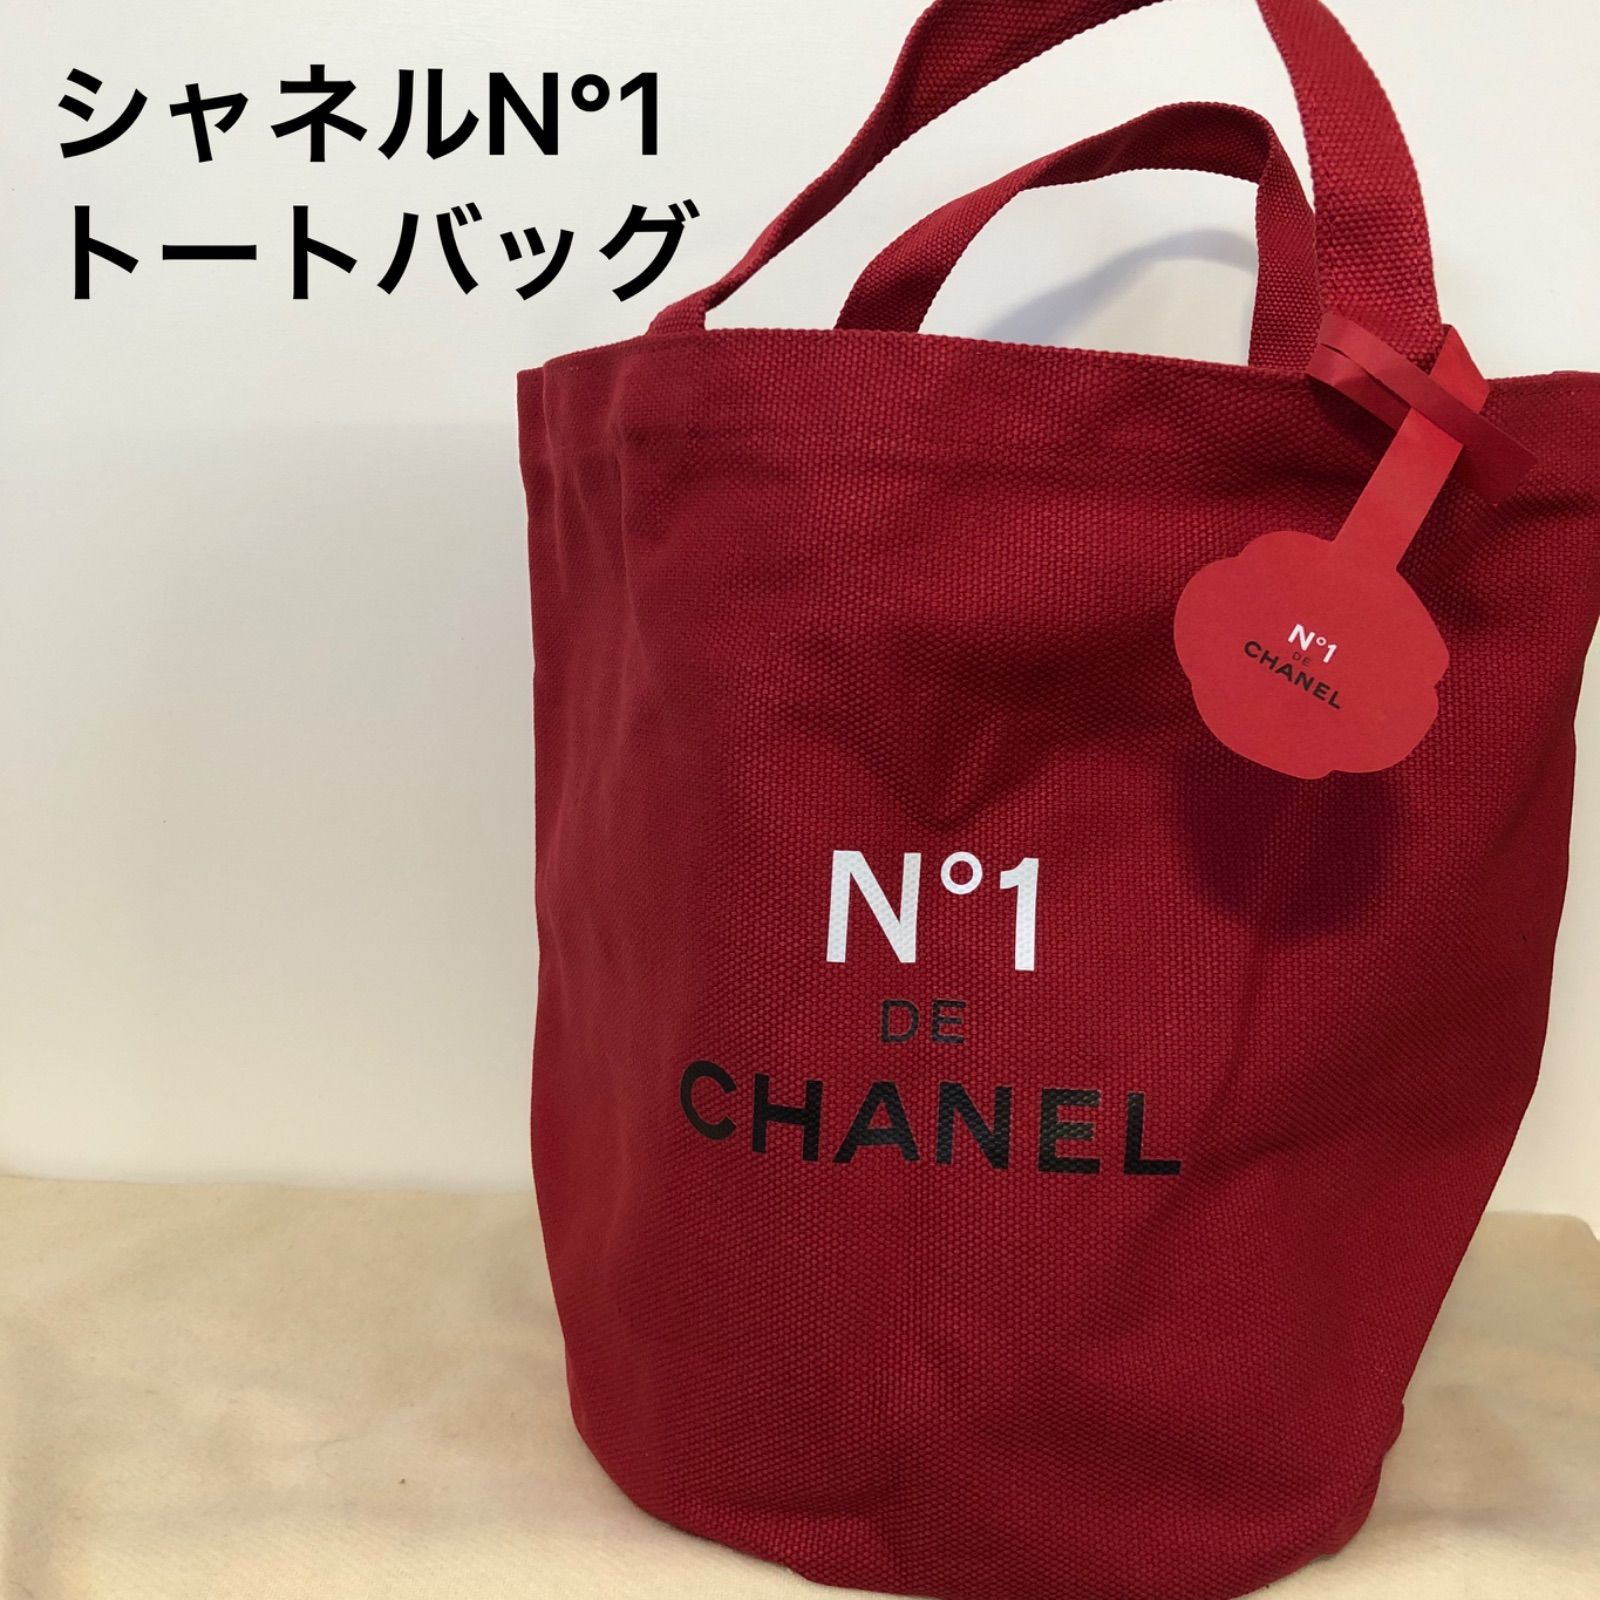 シャネル/N °1 DE CHANEL 赤色ノベルティバッグ